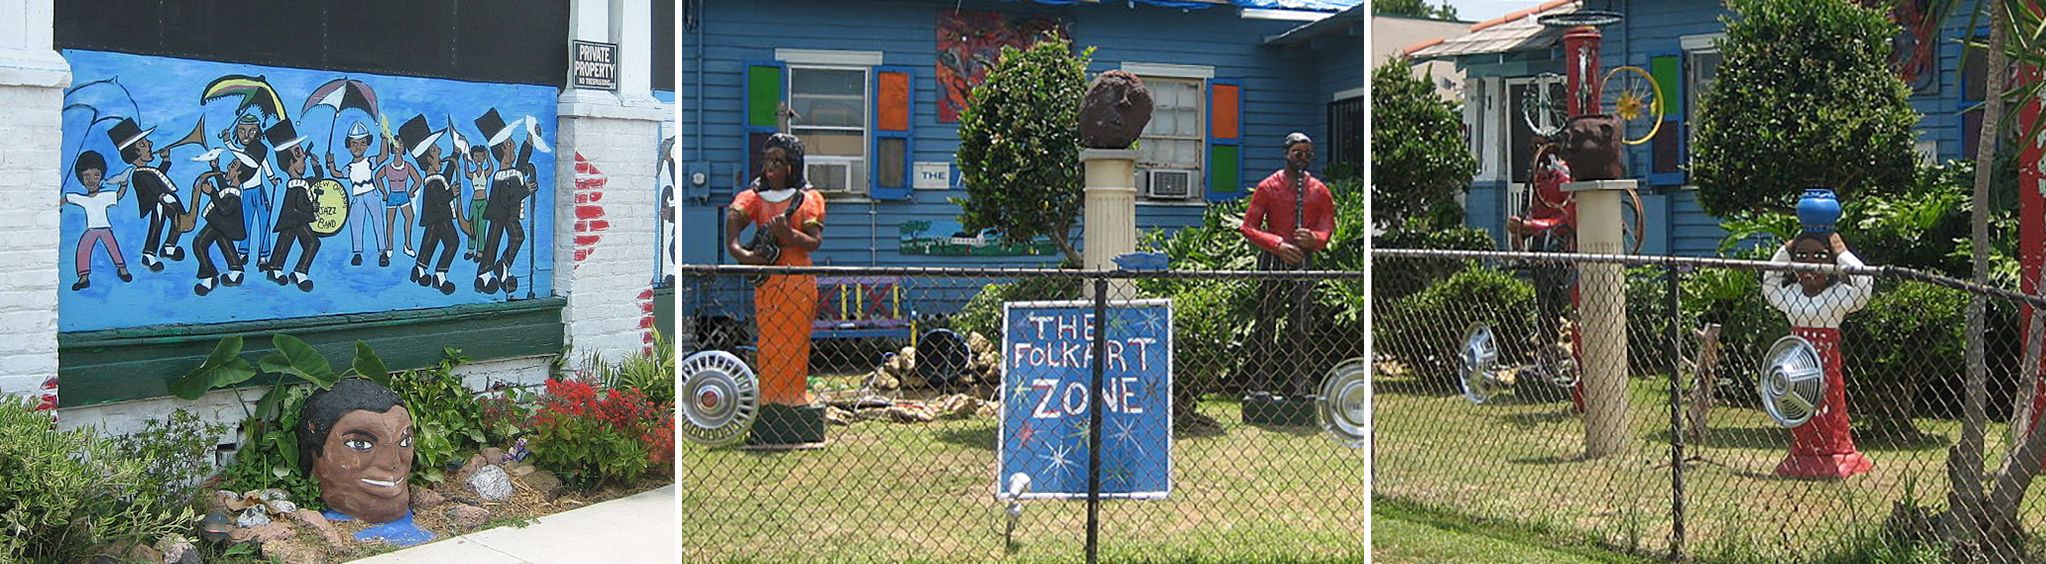 Algiers Folk Art Zone & Blues Museum in New Orleans